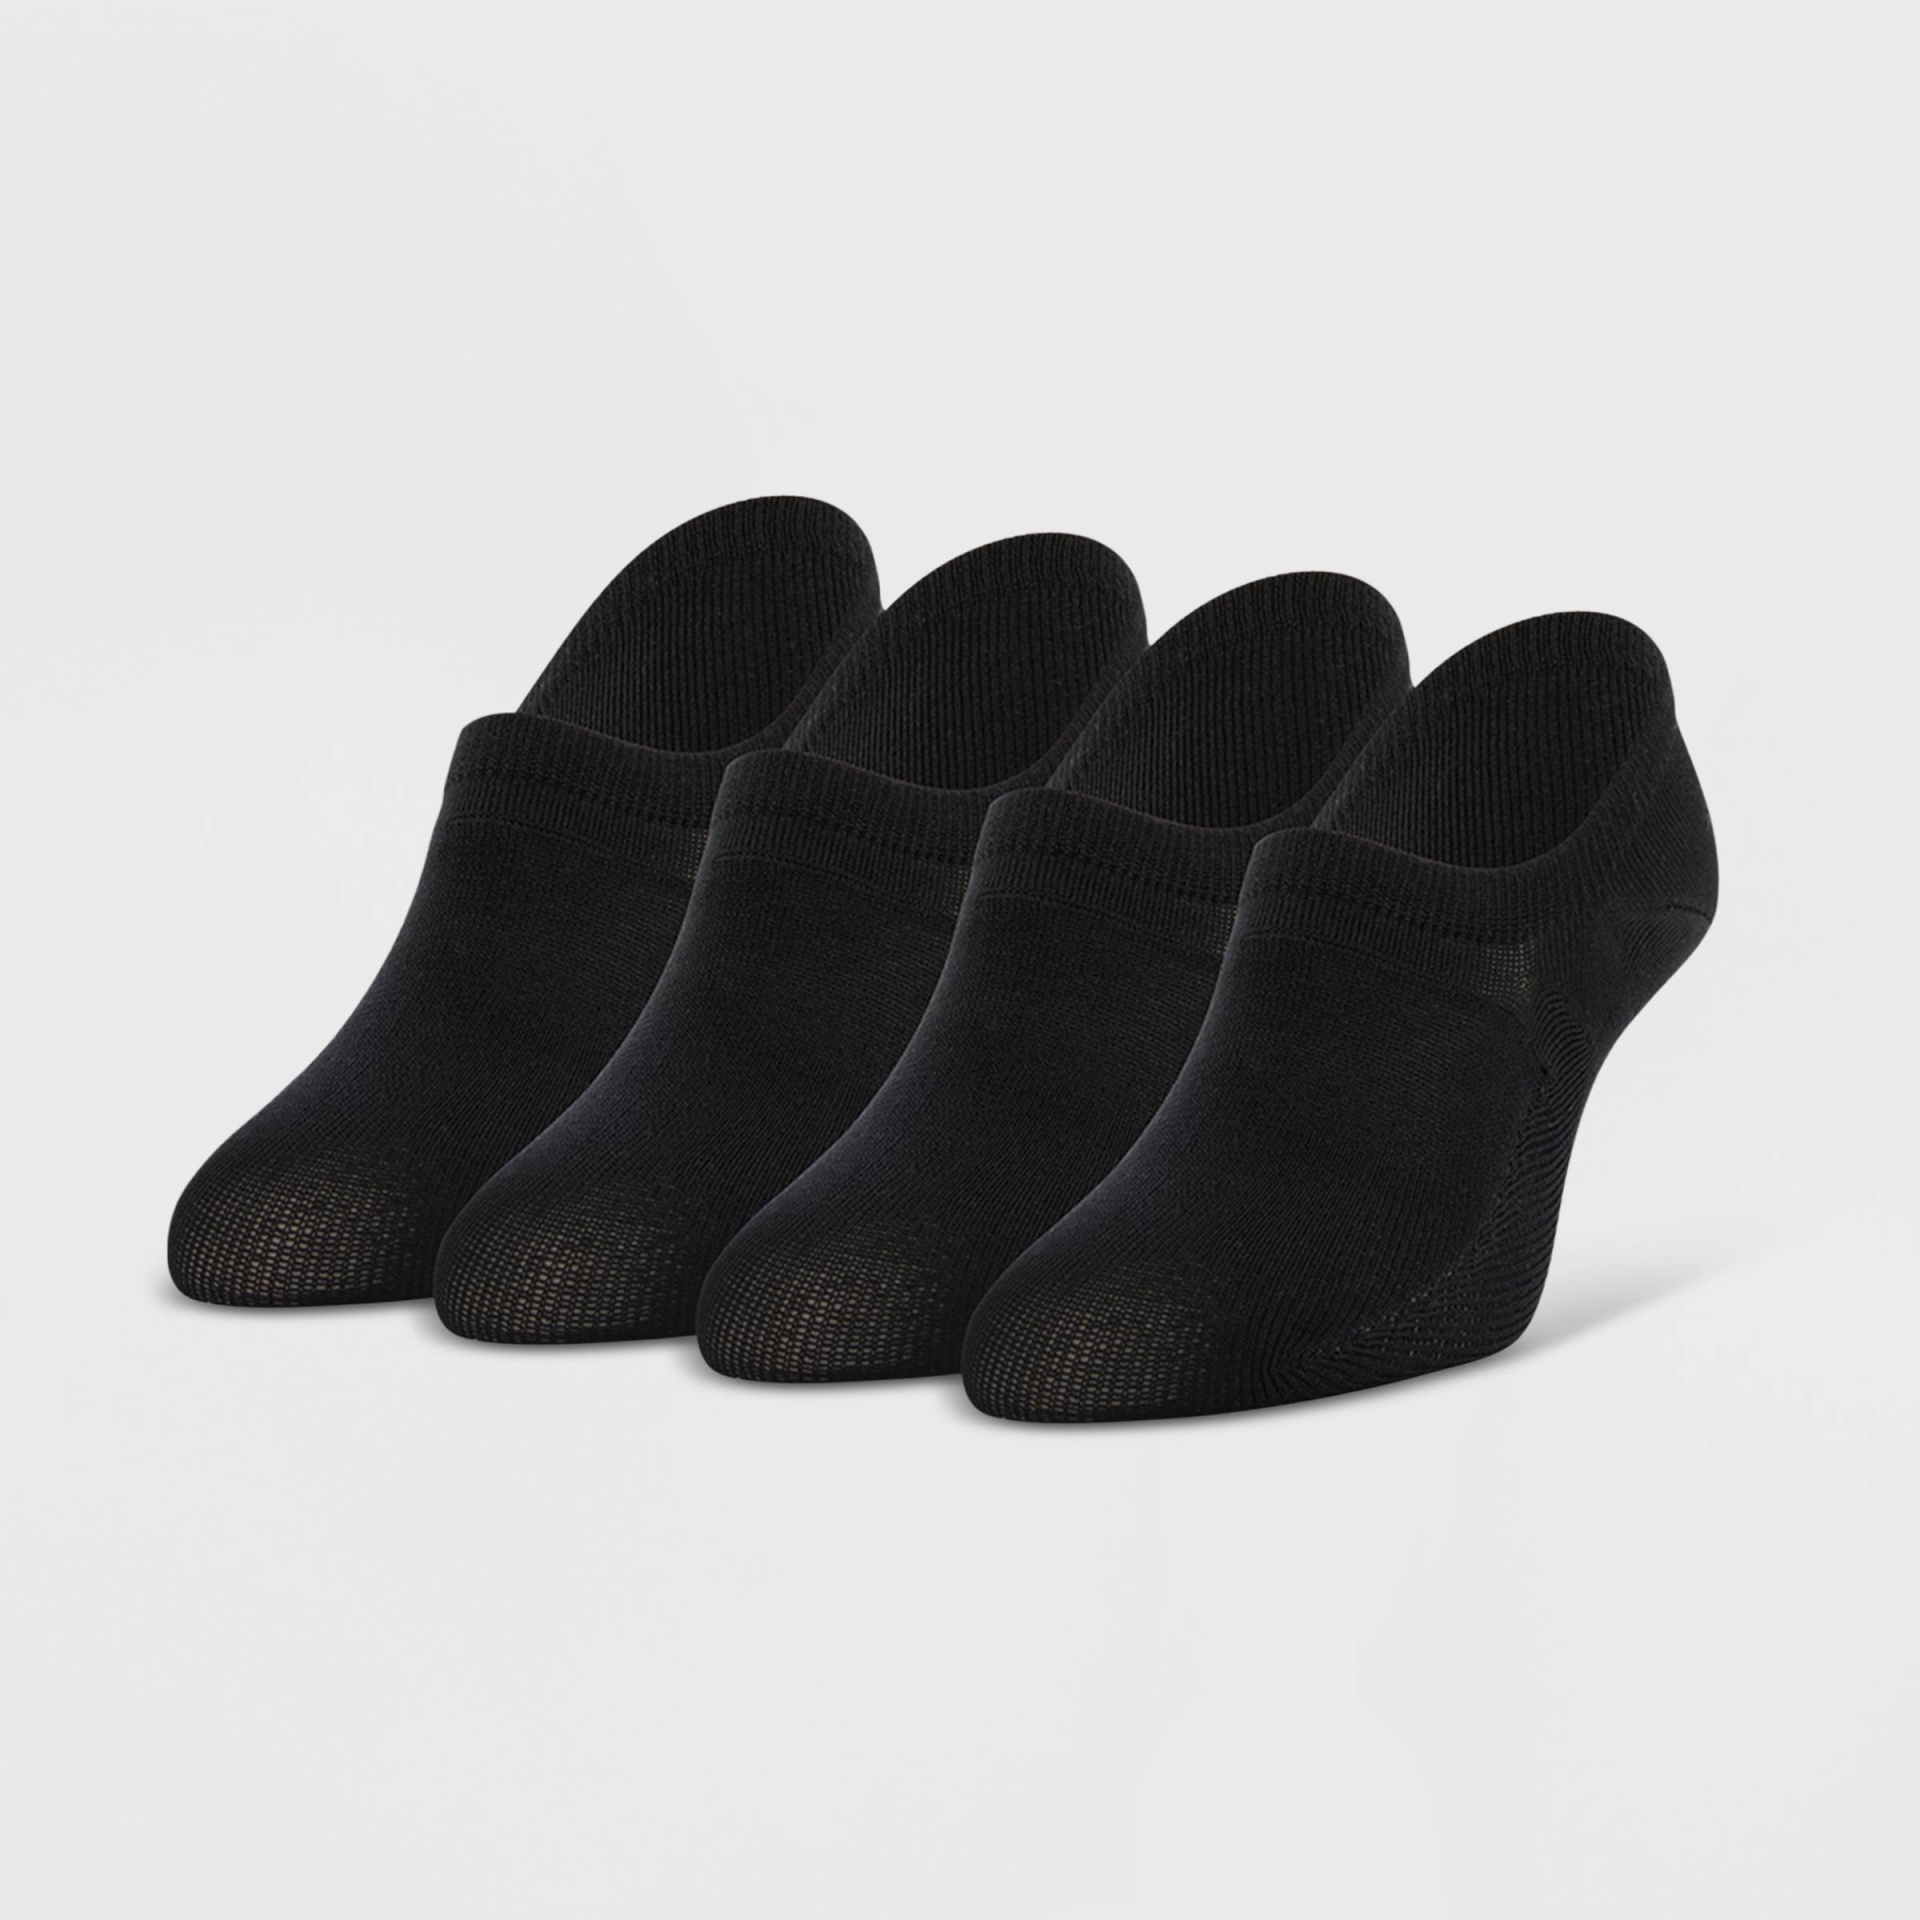 Peds Women's Nylon Sport 4pk Liner Socks - Black 5-10 4 ct | Shipt